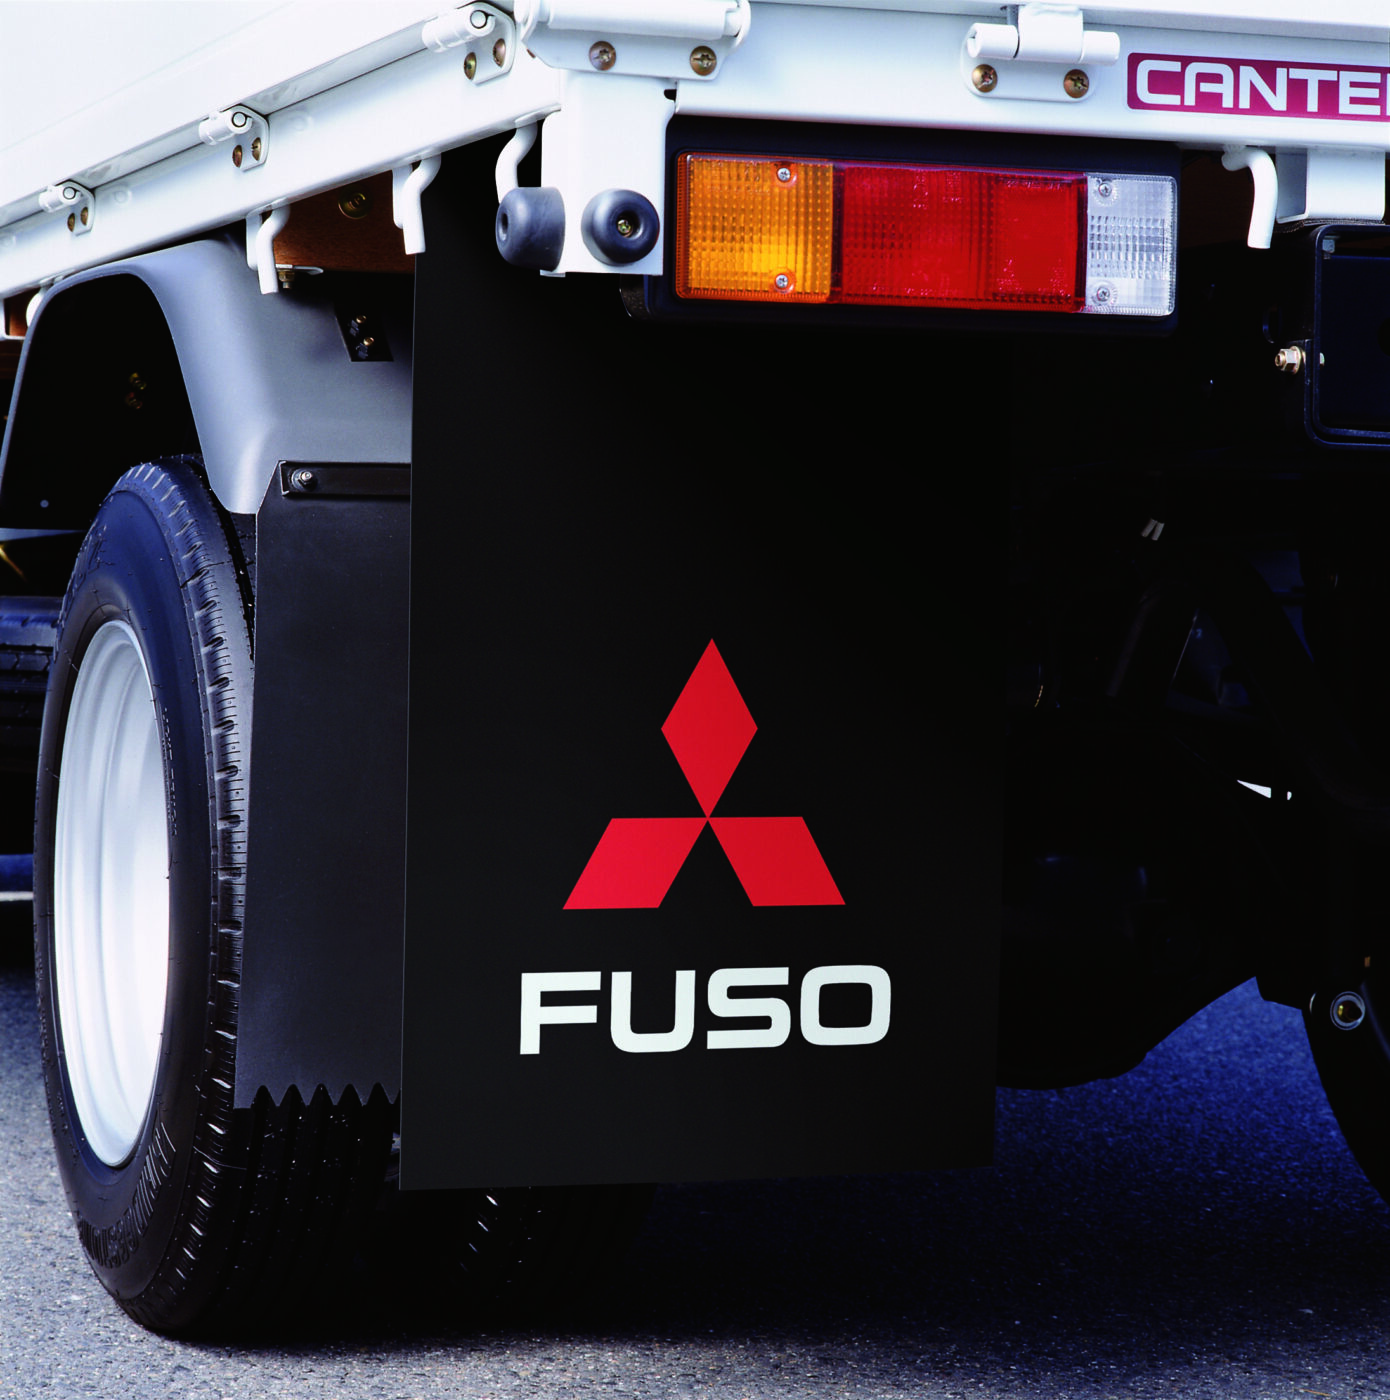 Les bavettes FUSO protègent le véhicule, les passagers, les autres véhicules et les piétons de la boue et des salissures projetées par les pneus.